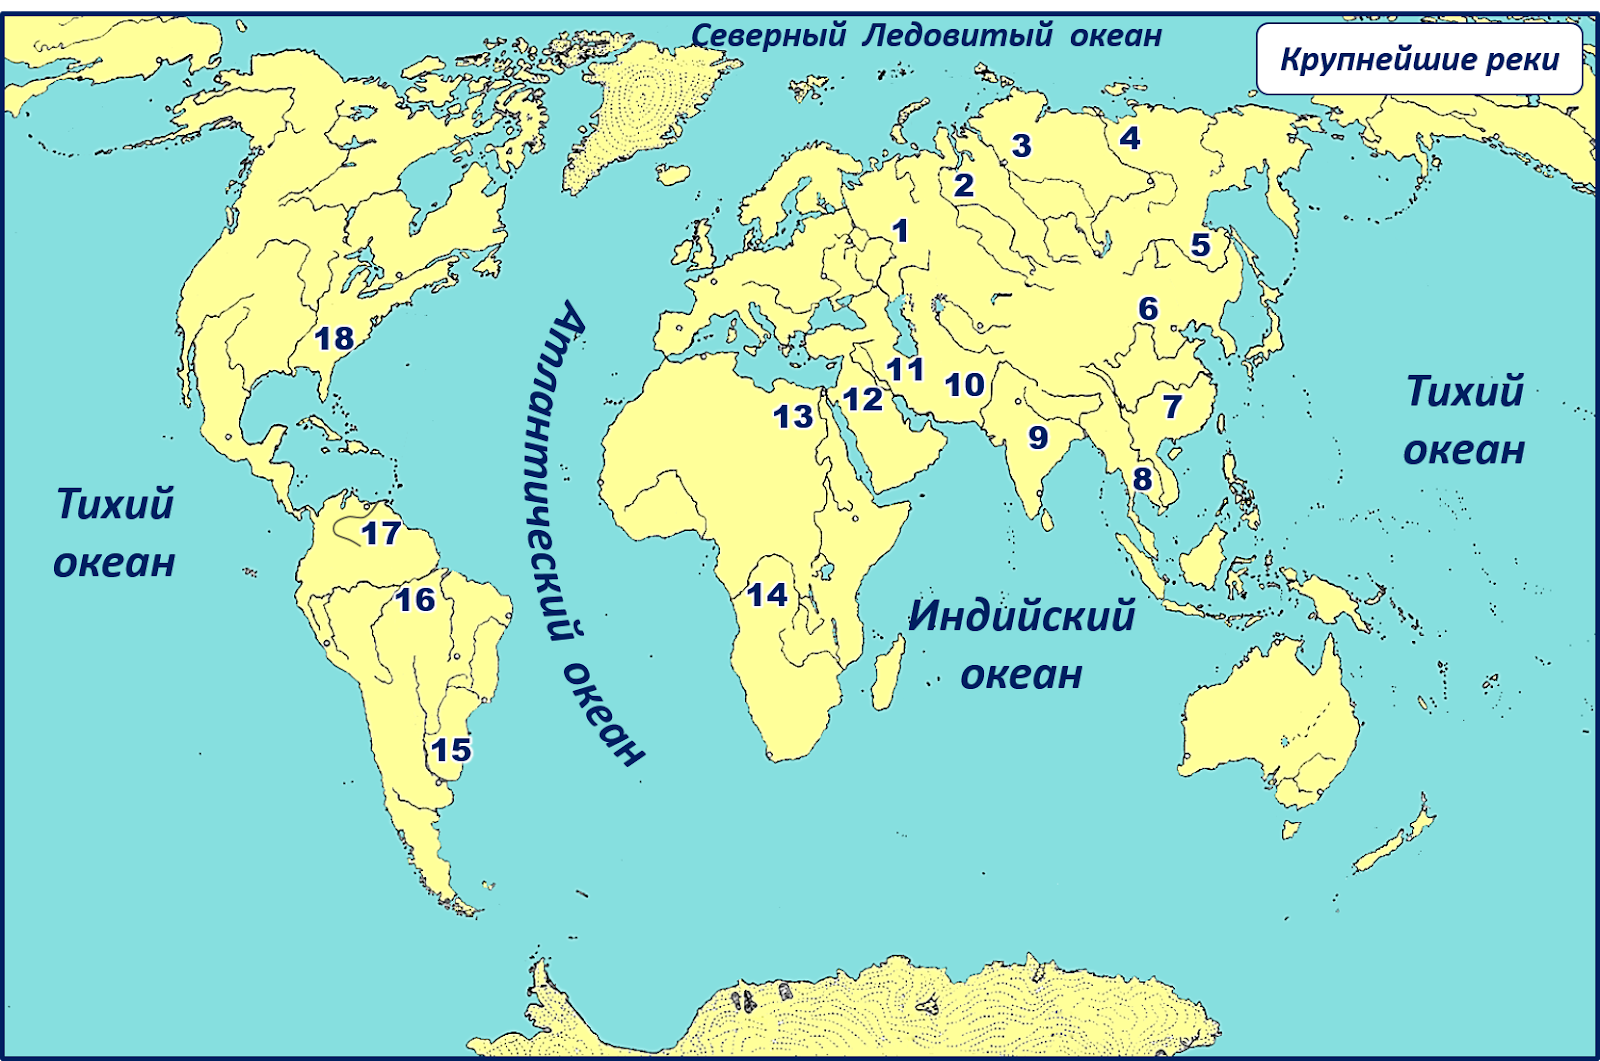 Материки наибольшие острова индийского океана. Крупнейшие реки на карте.